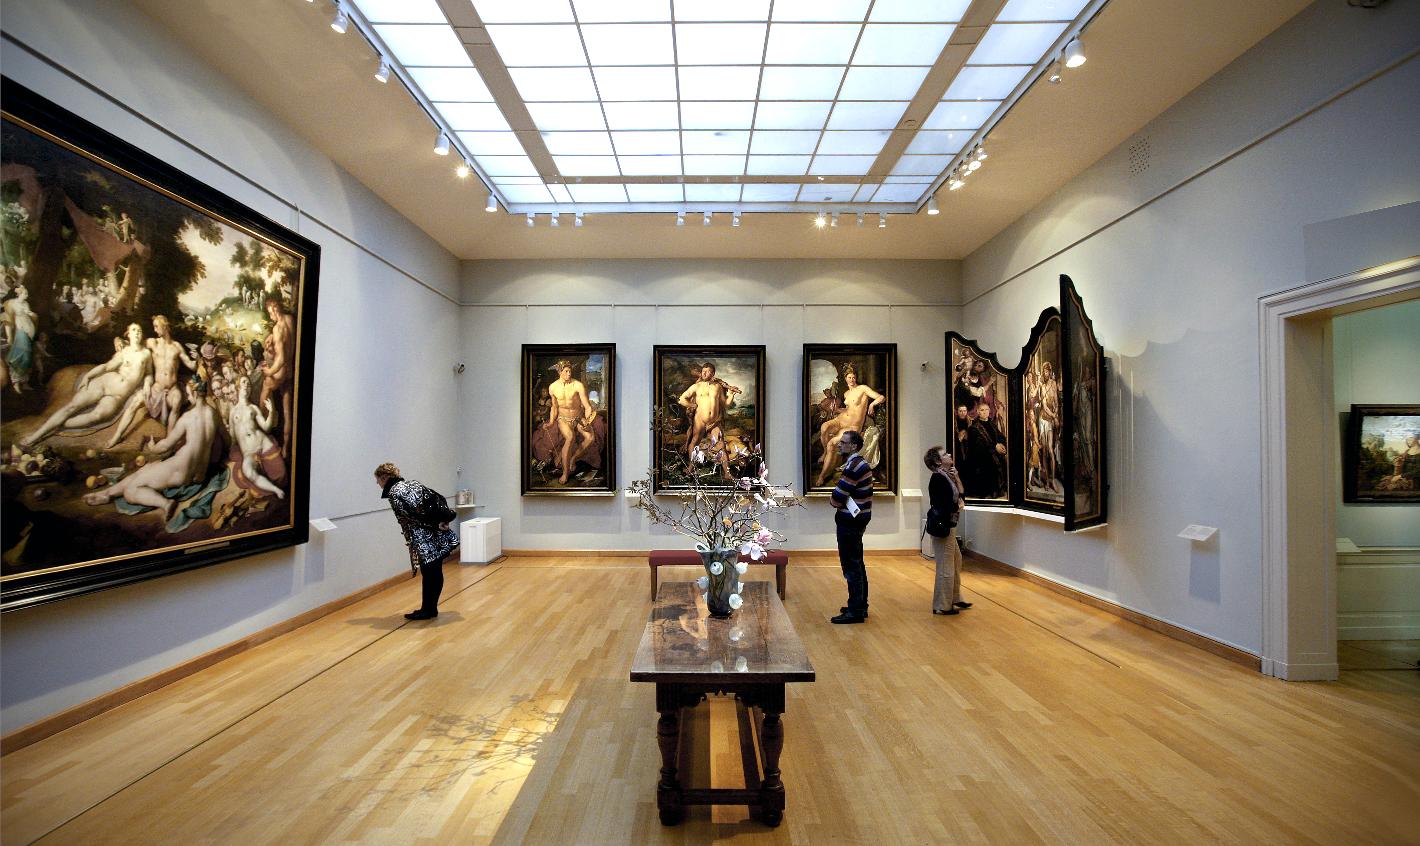 Photo Frans Hals Museum - Hof in Haarlem, View, Museums & galleries - #2